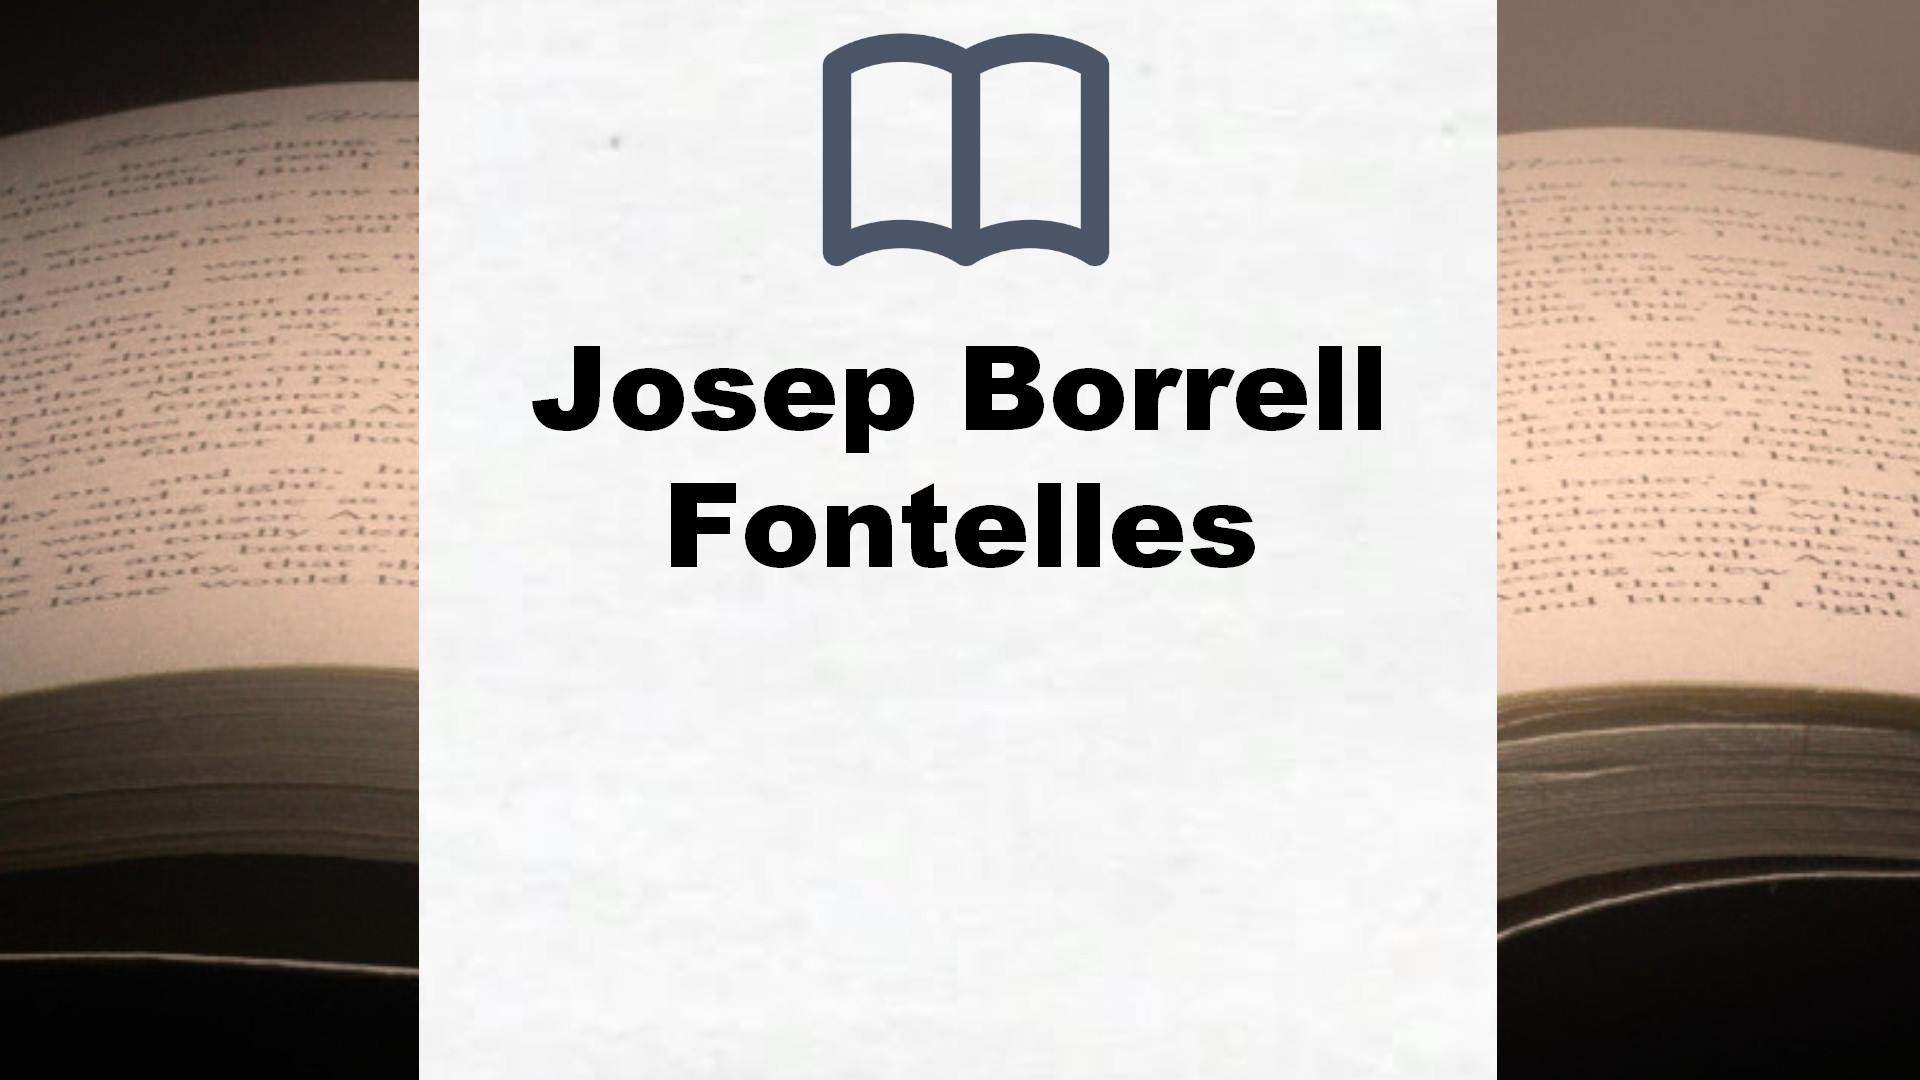 Libros Josep Borrell Fontelles